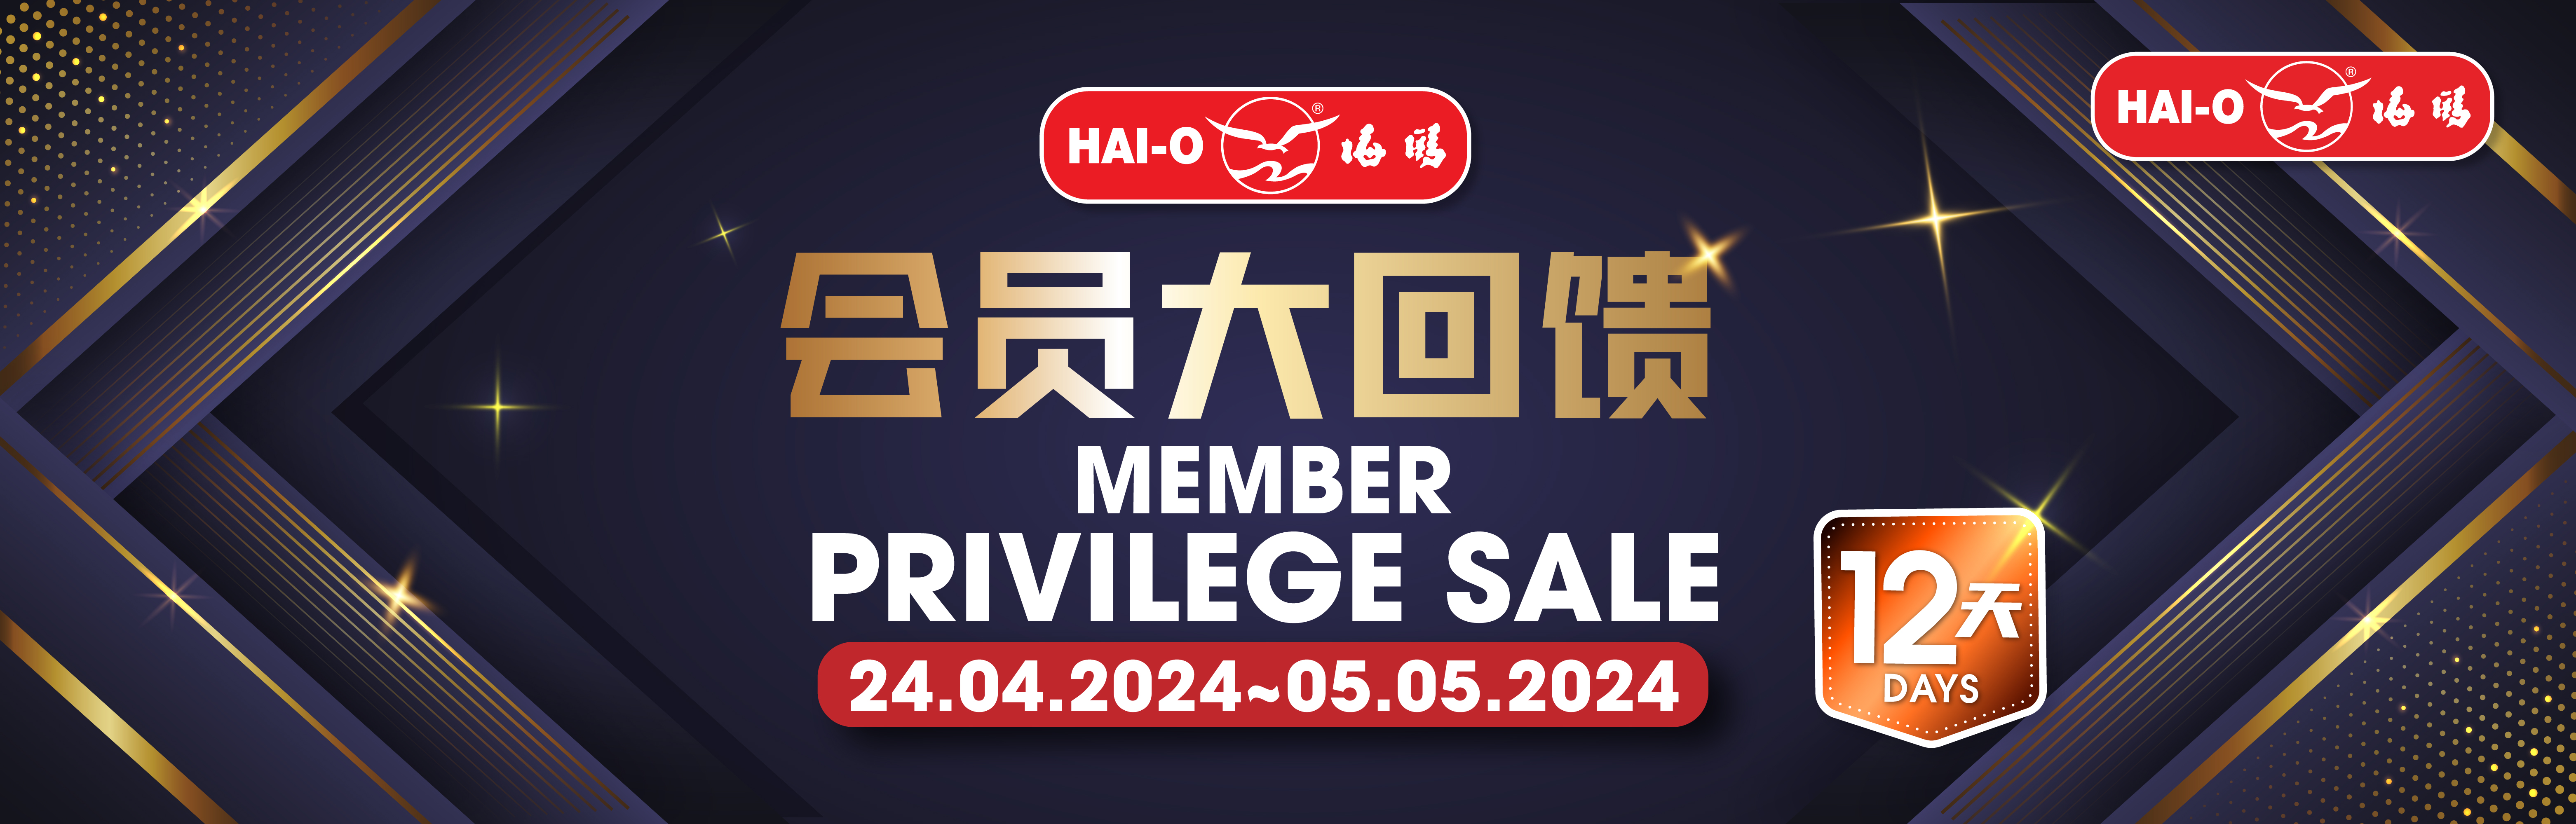 Member Privilege Sale @ April 2024